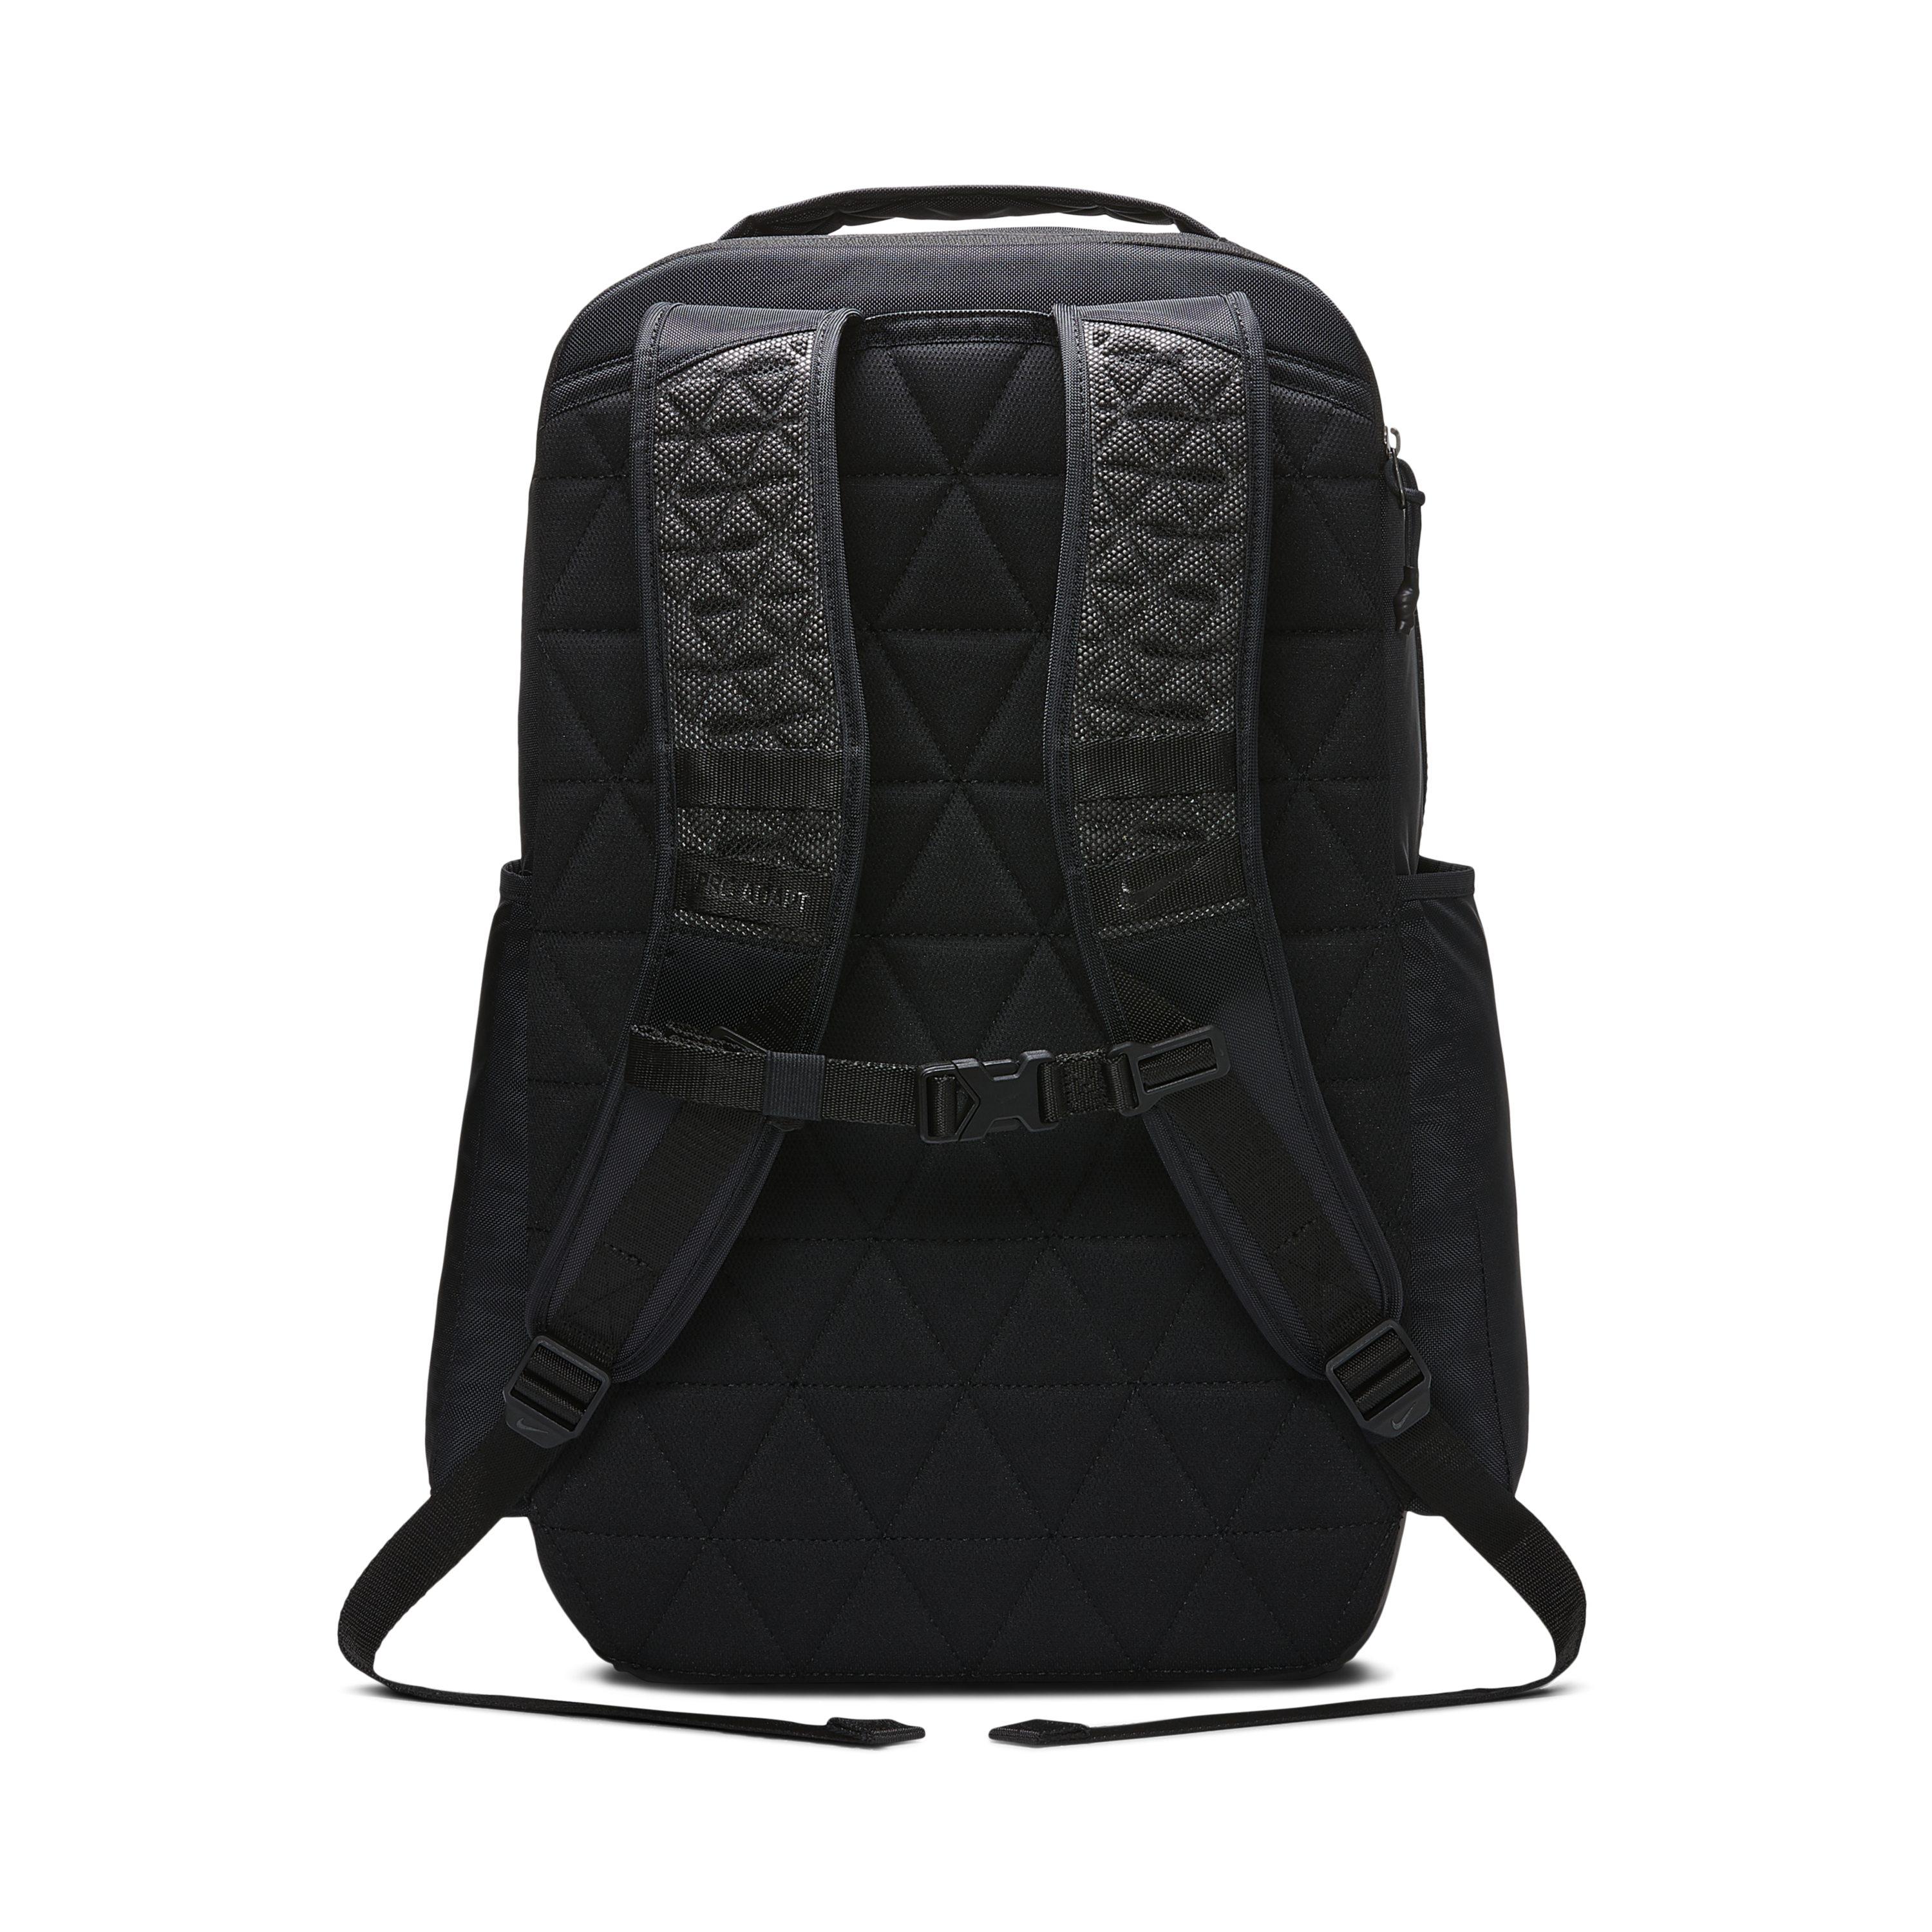 Nike Vapor Power 2.0 Graphic Training Backpack in Black for Men - Lyst